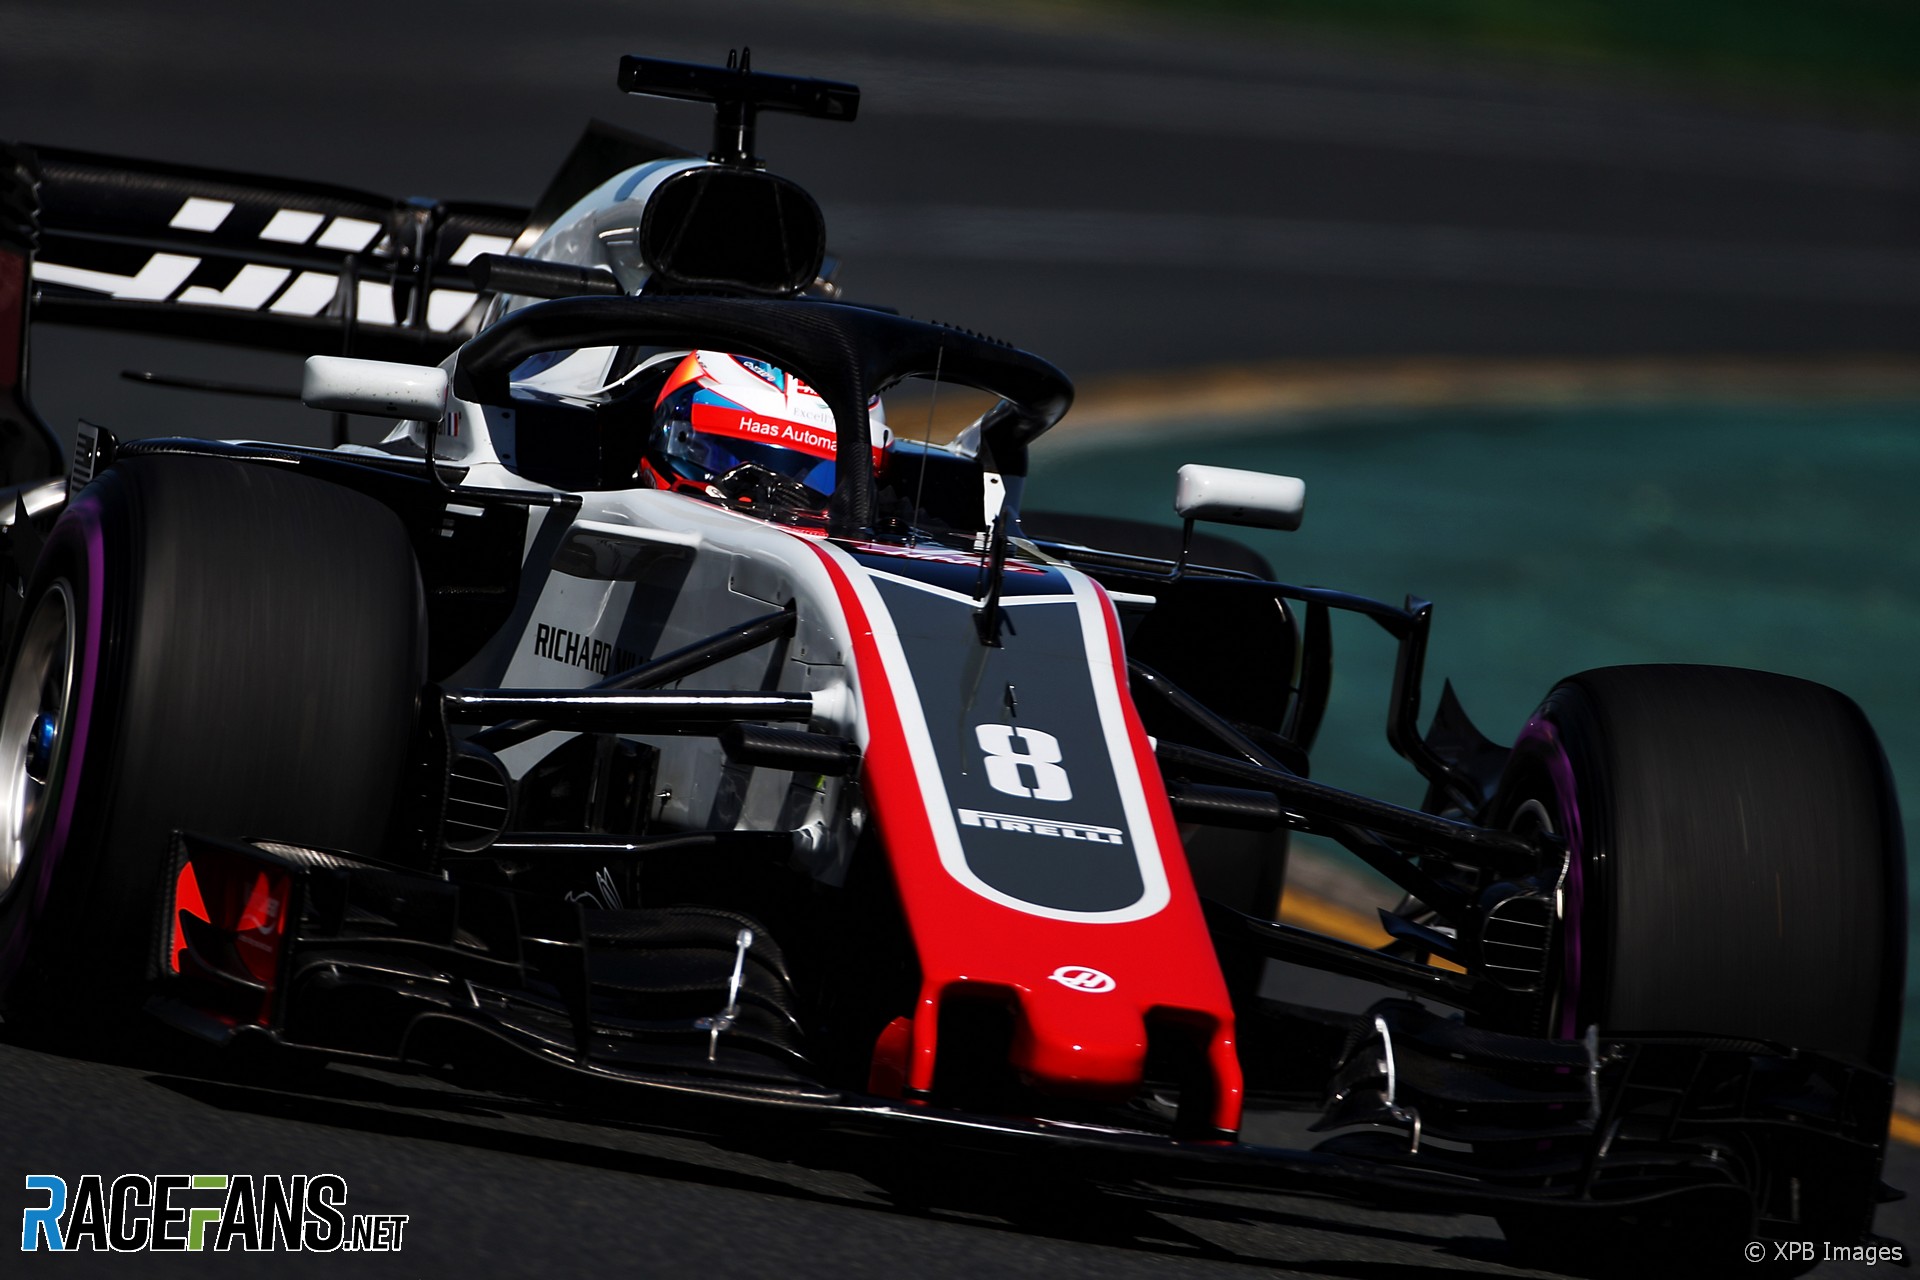 Romain Grosjean, Haas, Albert Park, 2018